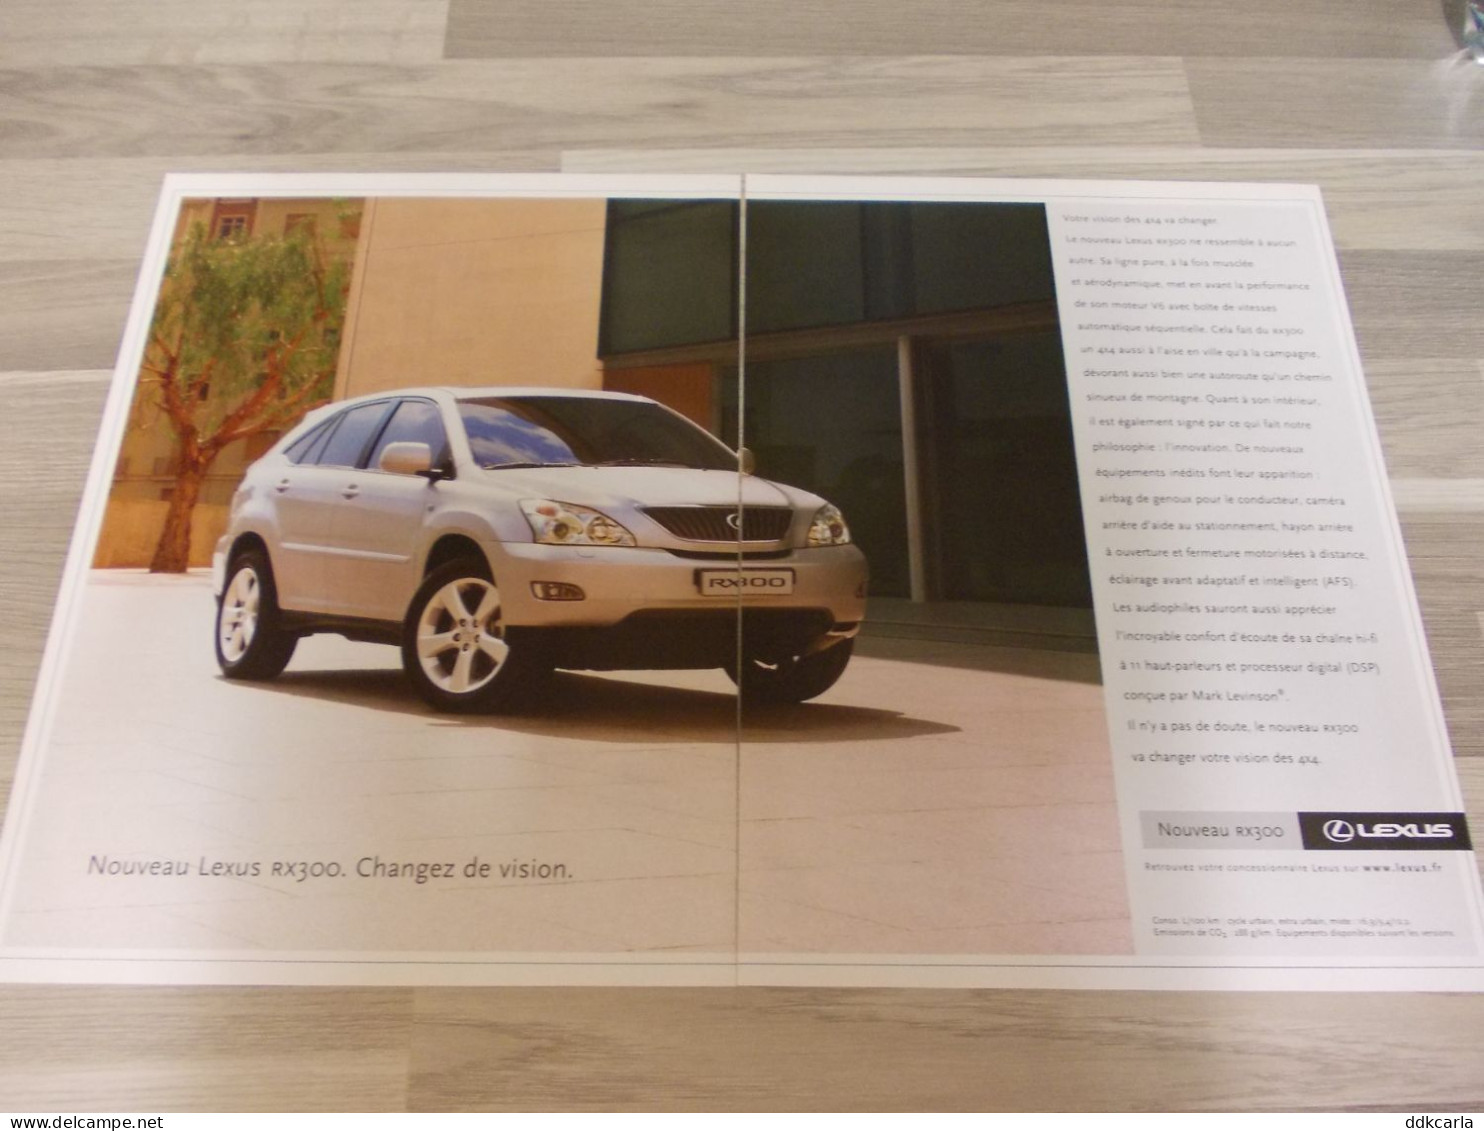 Reclame Advertentie Uit Oud Tijdschrift 2003 - Nouveau Lexus RX300 - Advertising